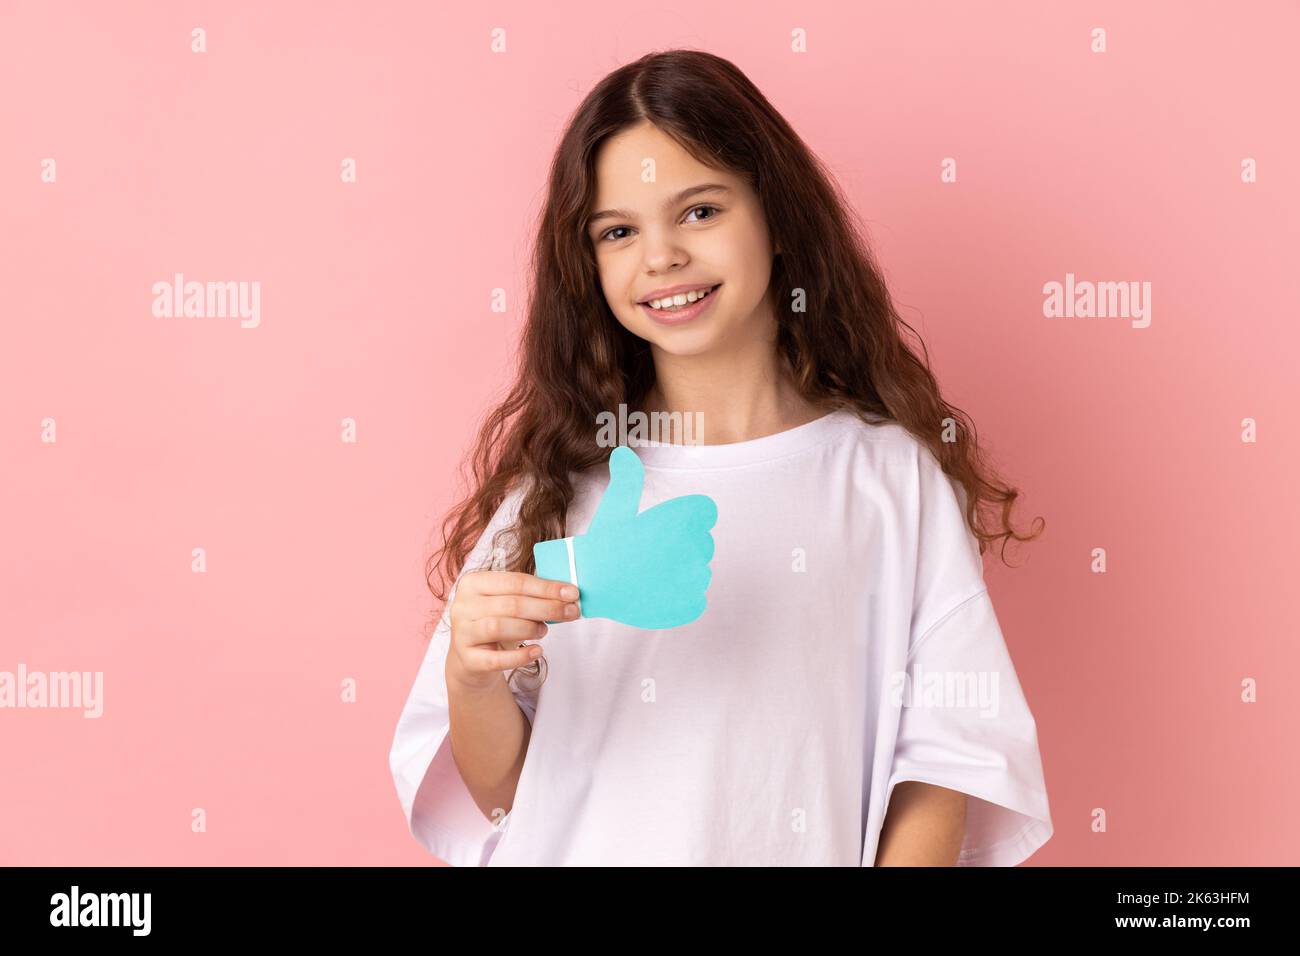 Portrait von lächelnd entzückend entzückende kleine Mädchen trägt weiße T-Shirt halten und zeigt wie oder Daumen nach oben Papier Form Zeichen. Innenaufnahme des Studios isoliert auf rosa Hintergrund. Stockfoto